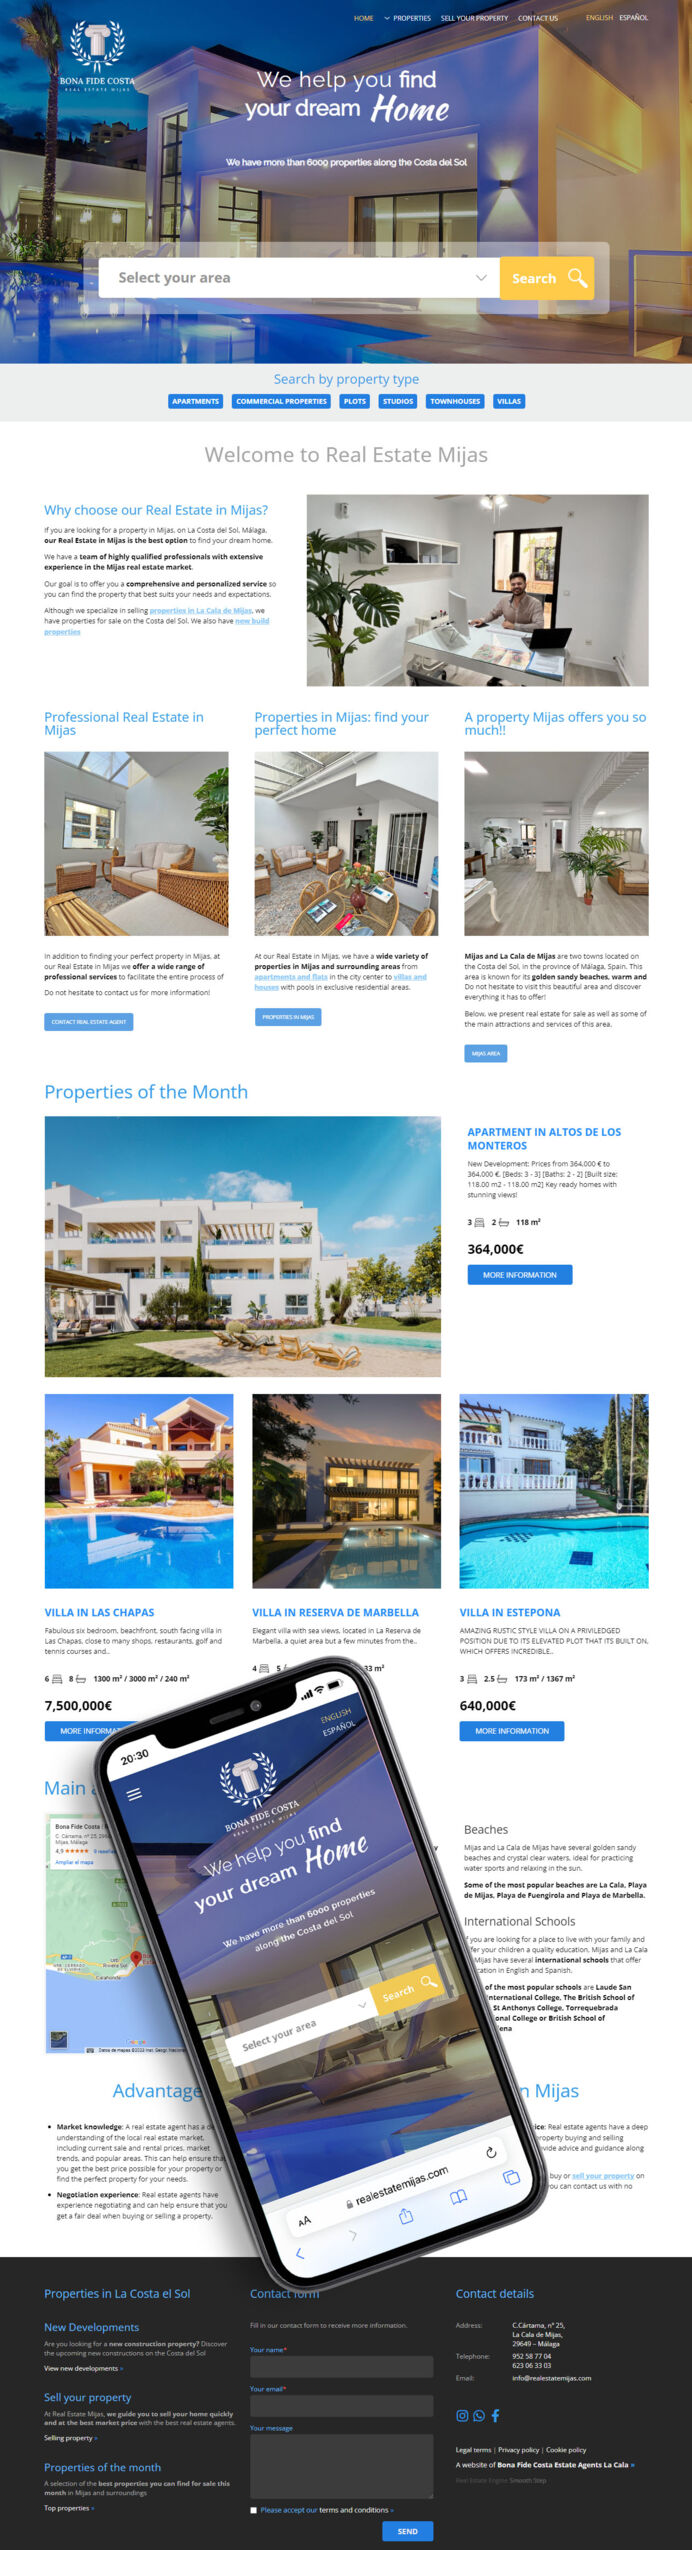 Desarrollo web para agencia inmobiliaria en Mijas basada en nuestro diseño exclusivo.